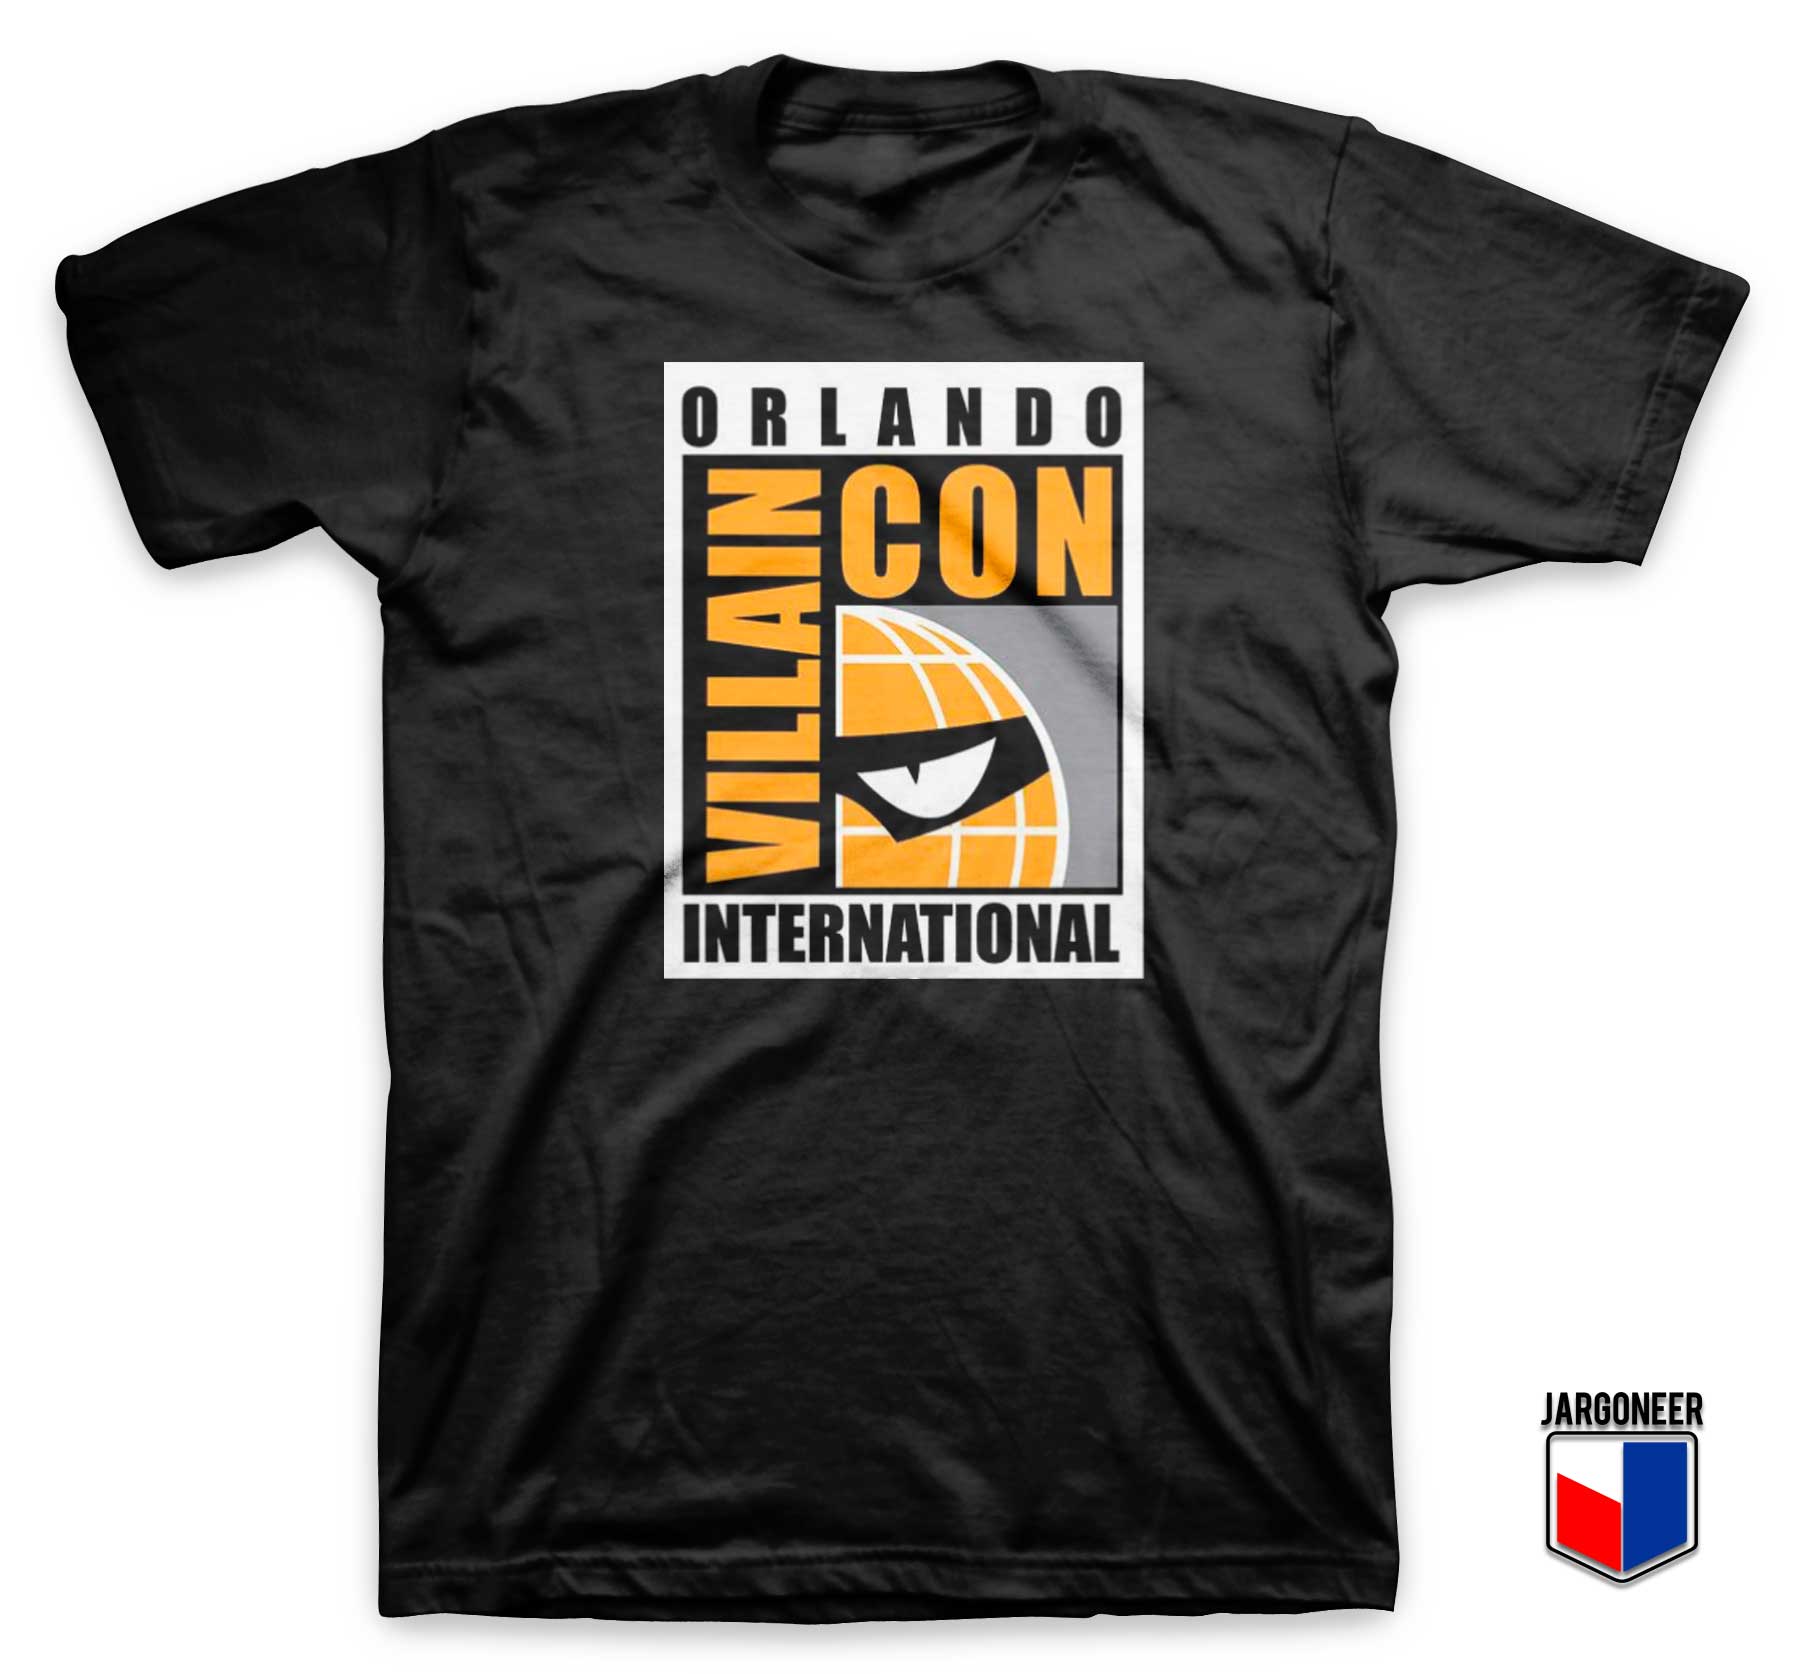 Orlando Villain Con T Shirt - Shop Unique Graphic Cool Shirt Designs